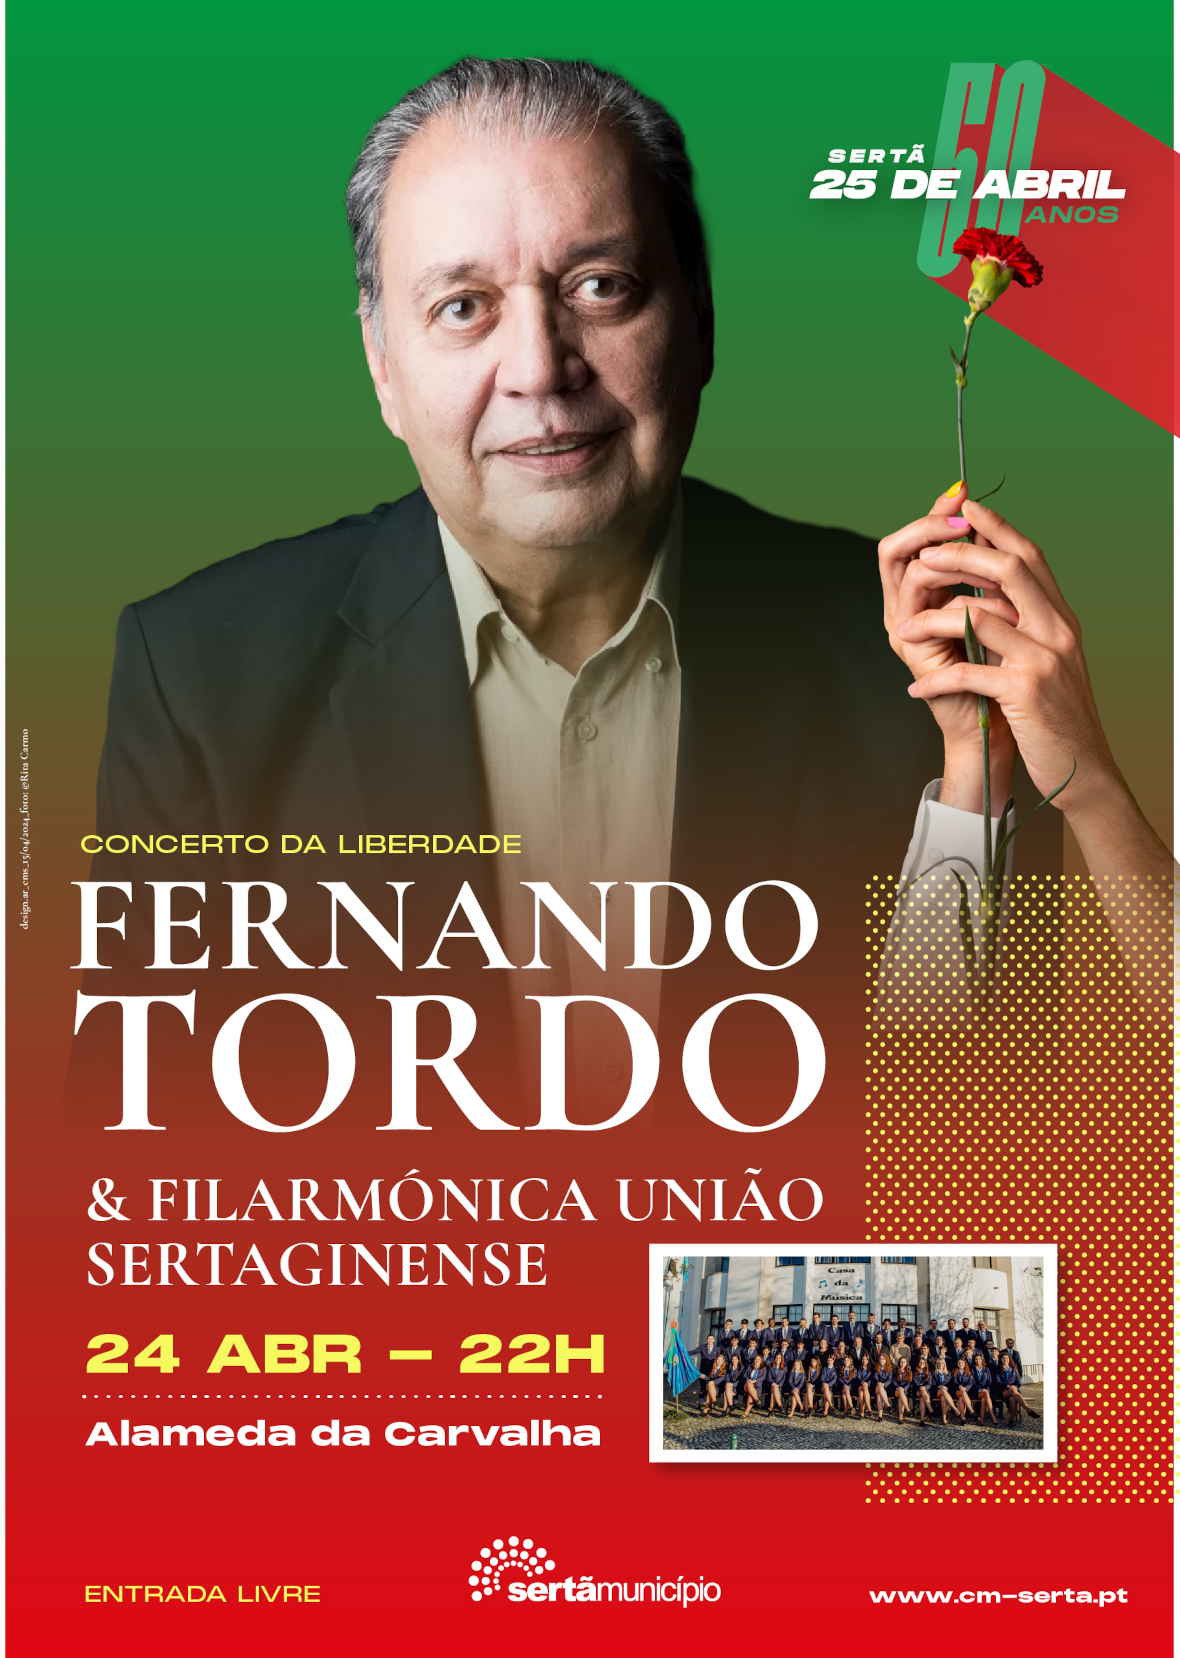 Capa Oficial do Evento Concerto da Liberdade com Fernando Tordo e Filarmónica União Sertaginense